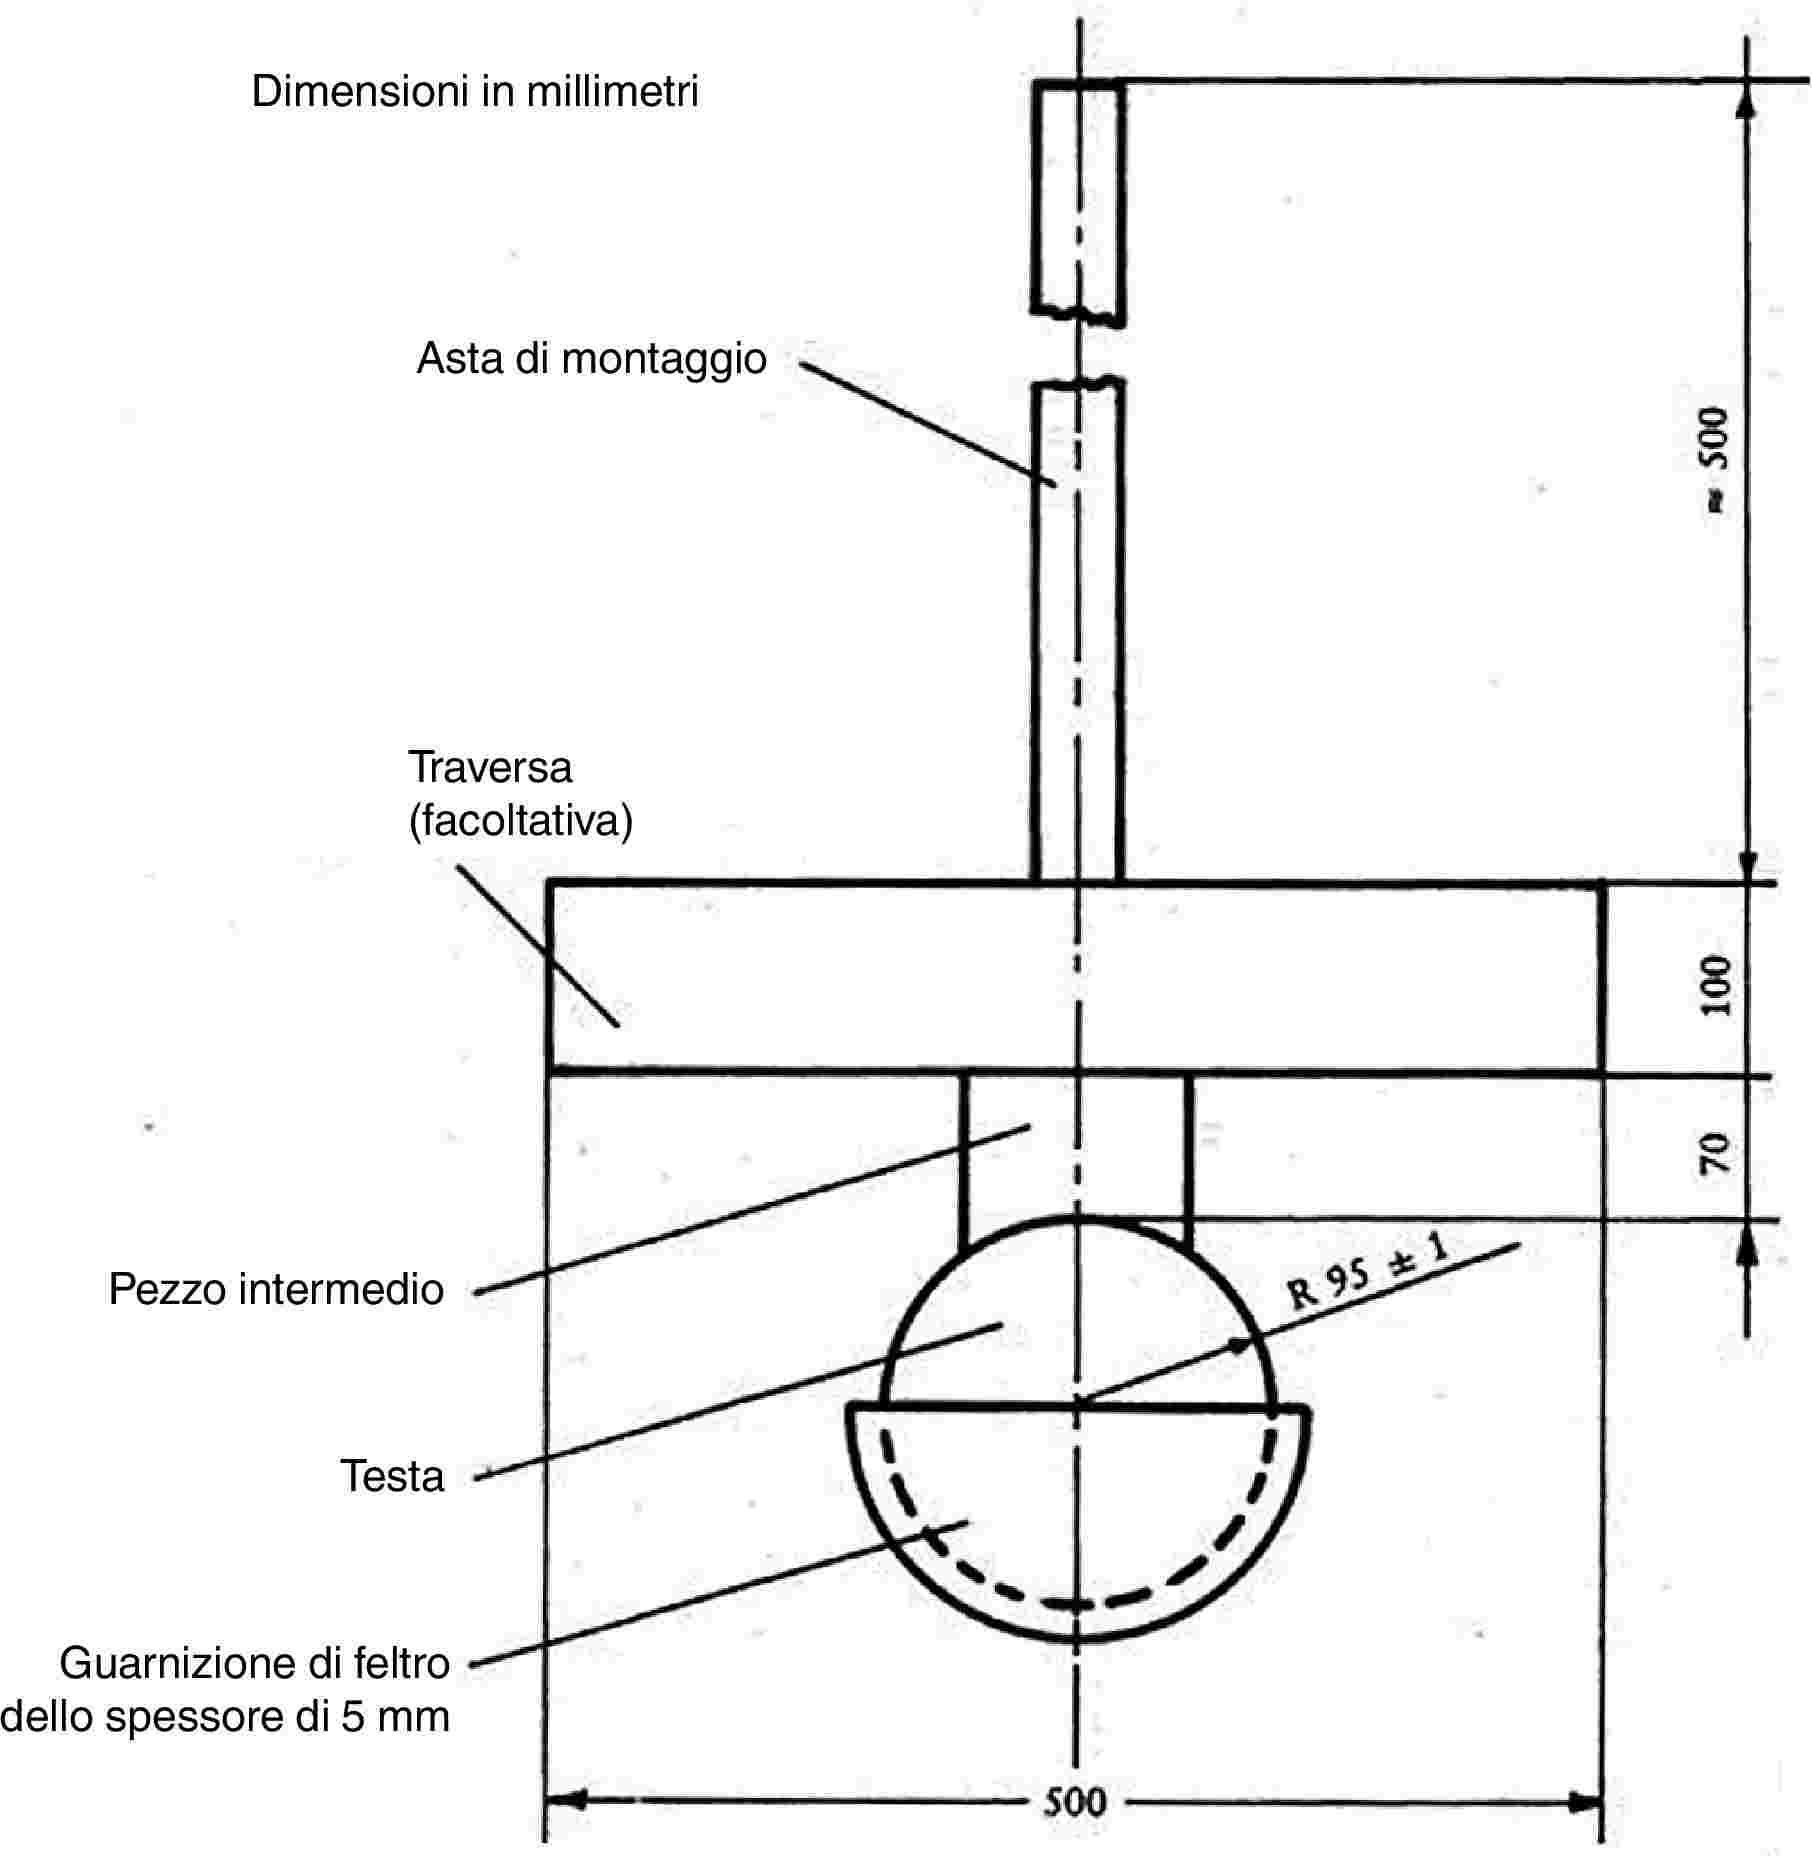 Dimensioni in millimetriAsta di montaggioTraversa (facoltativa)Pezzo intermedioTestaGuarnizione di feltro dello spessore di 5 mm